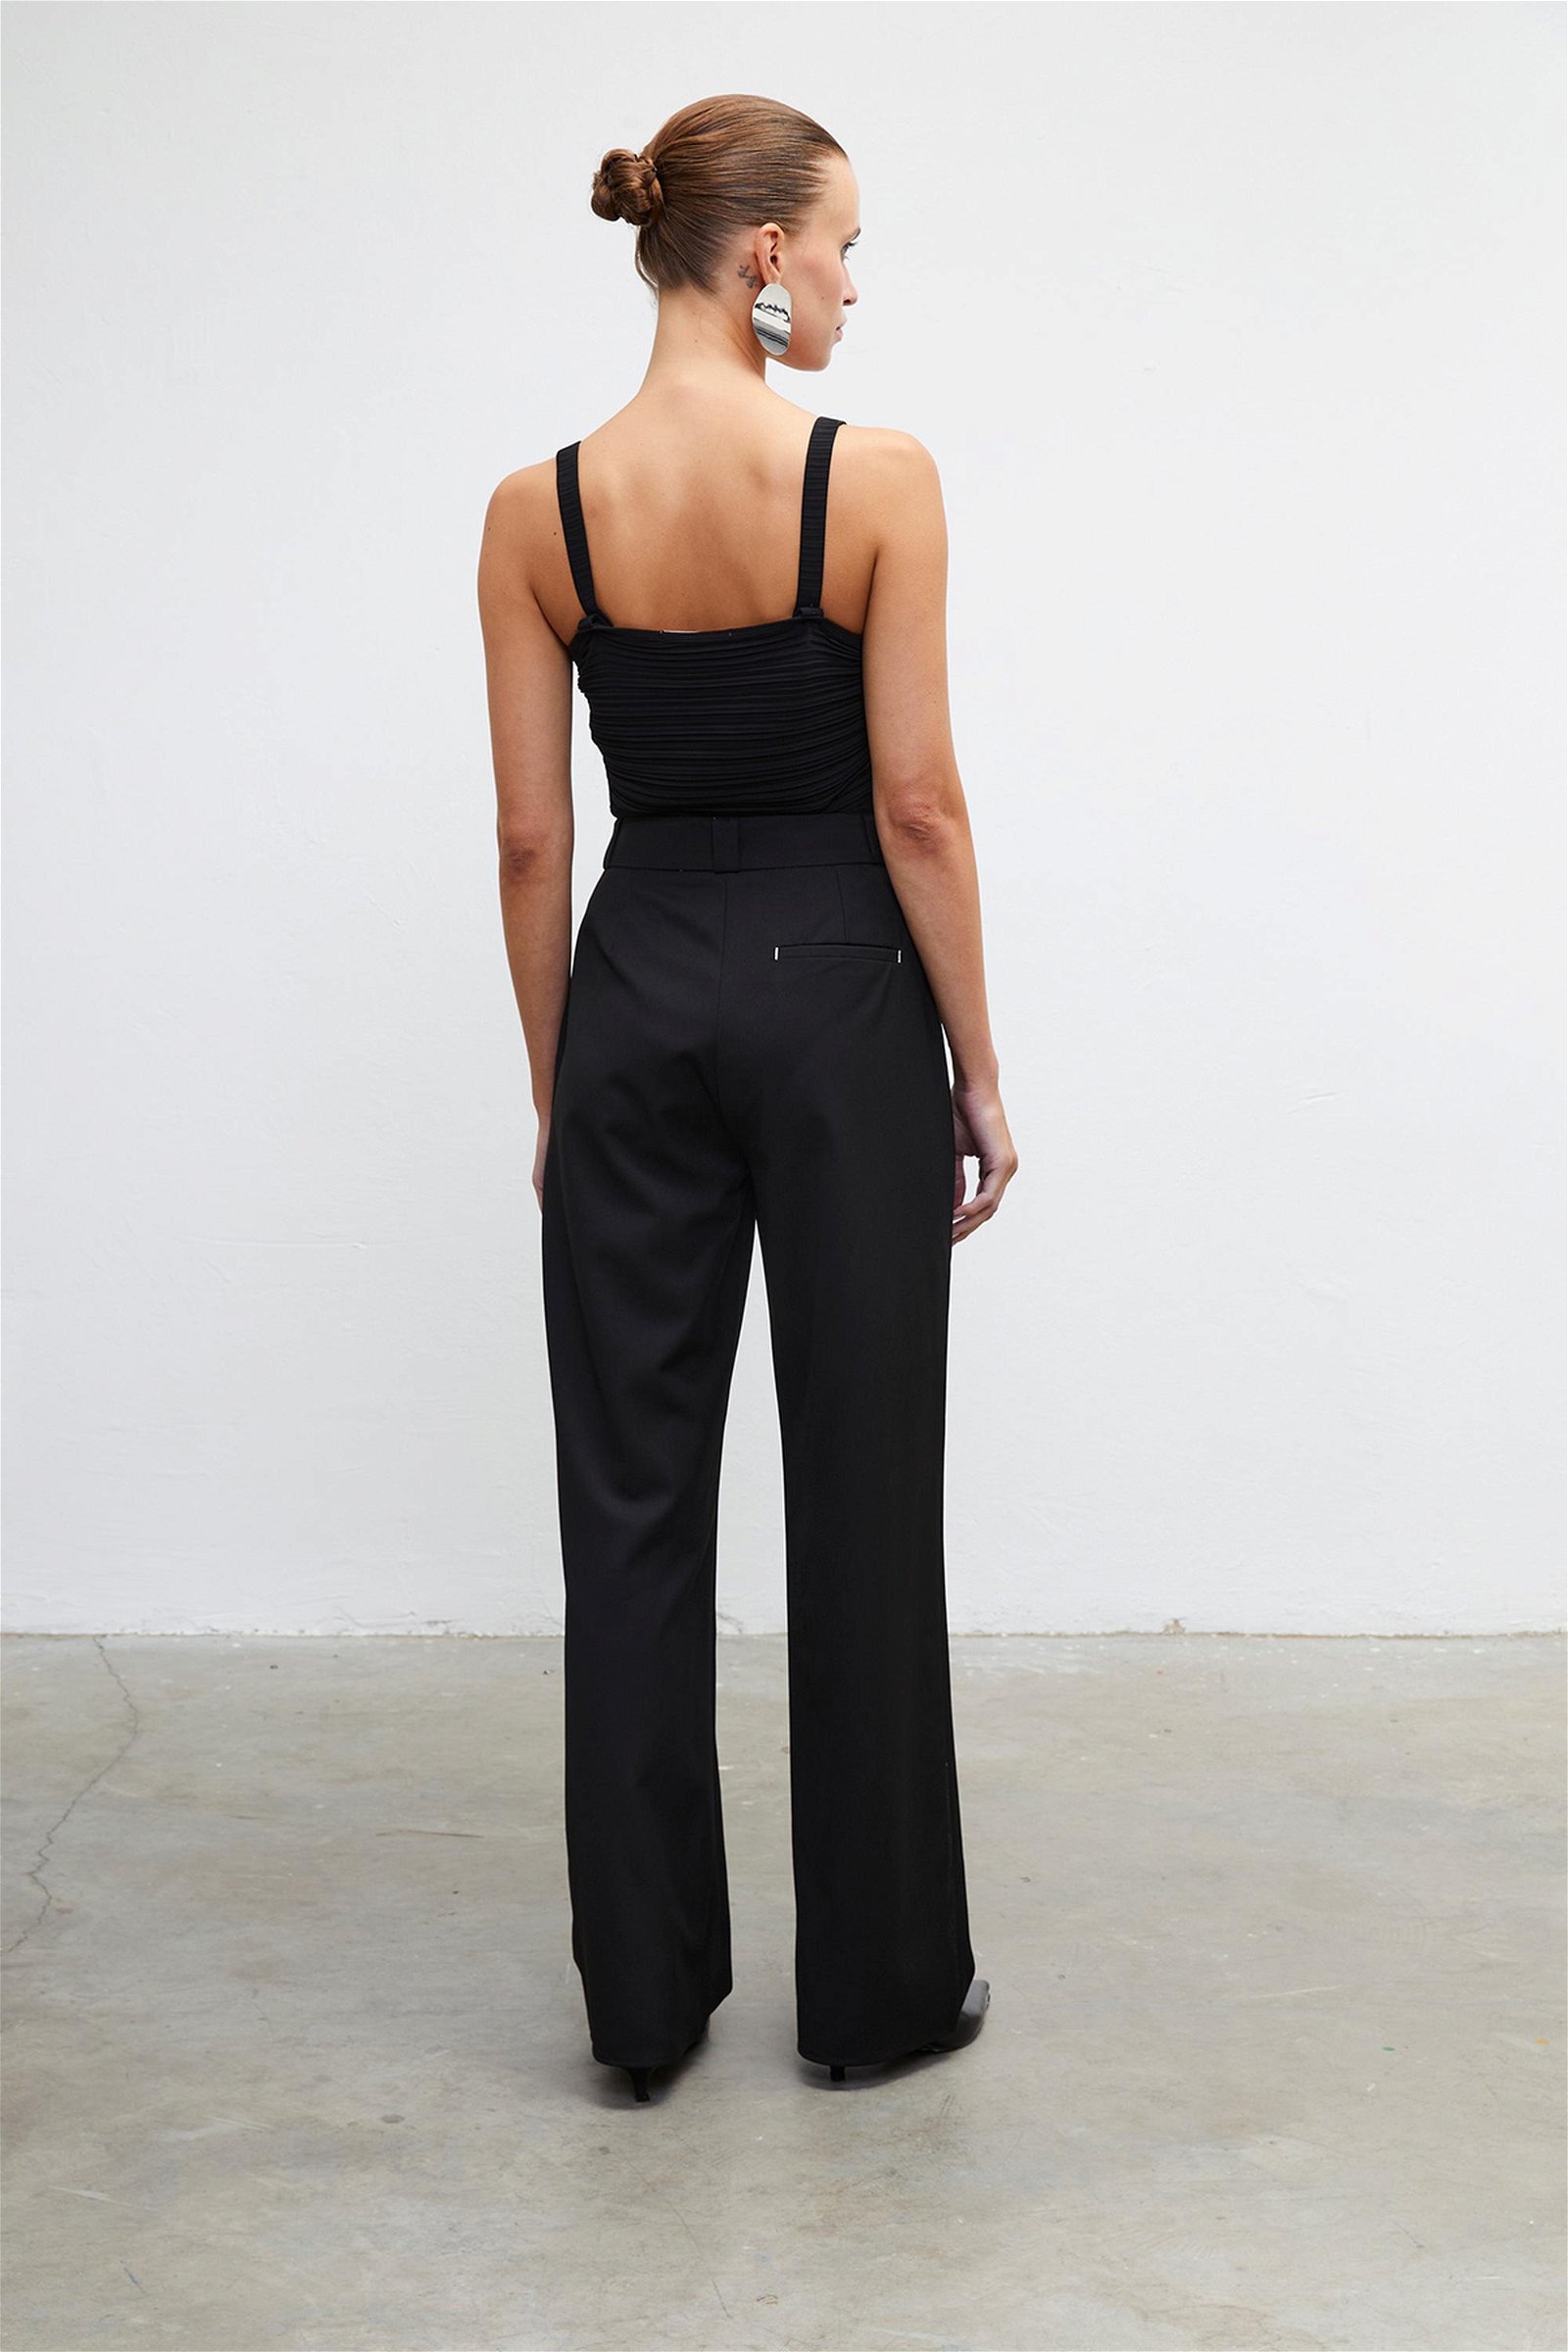 Vatkalı Kadın Ruched Bodysuit - Premium Collection Siyah